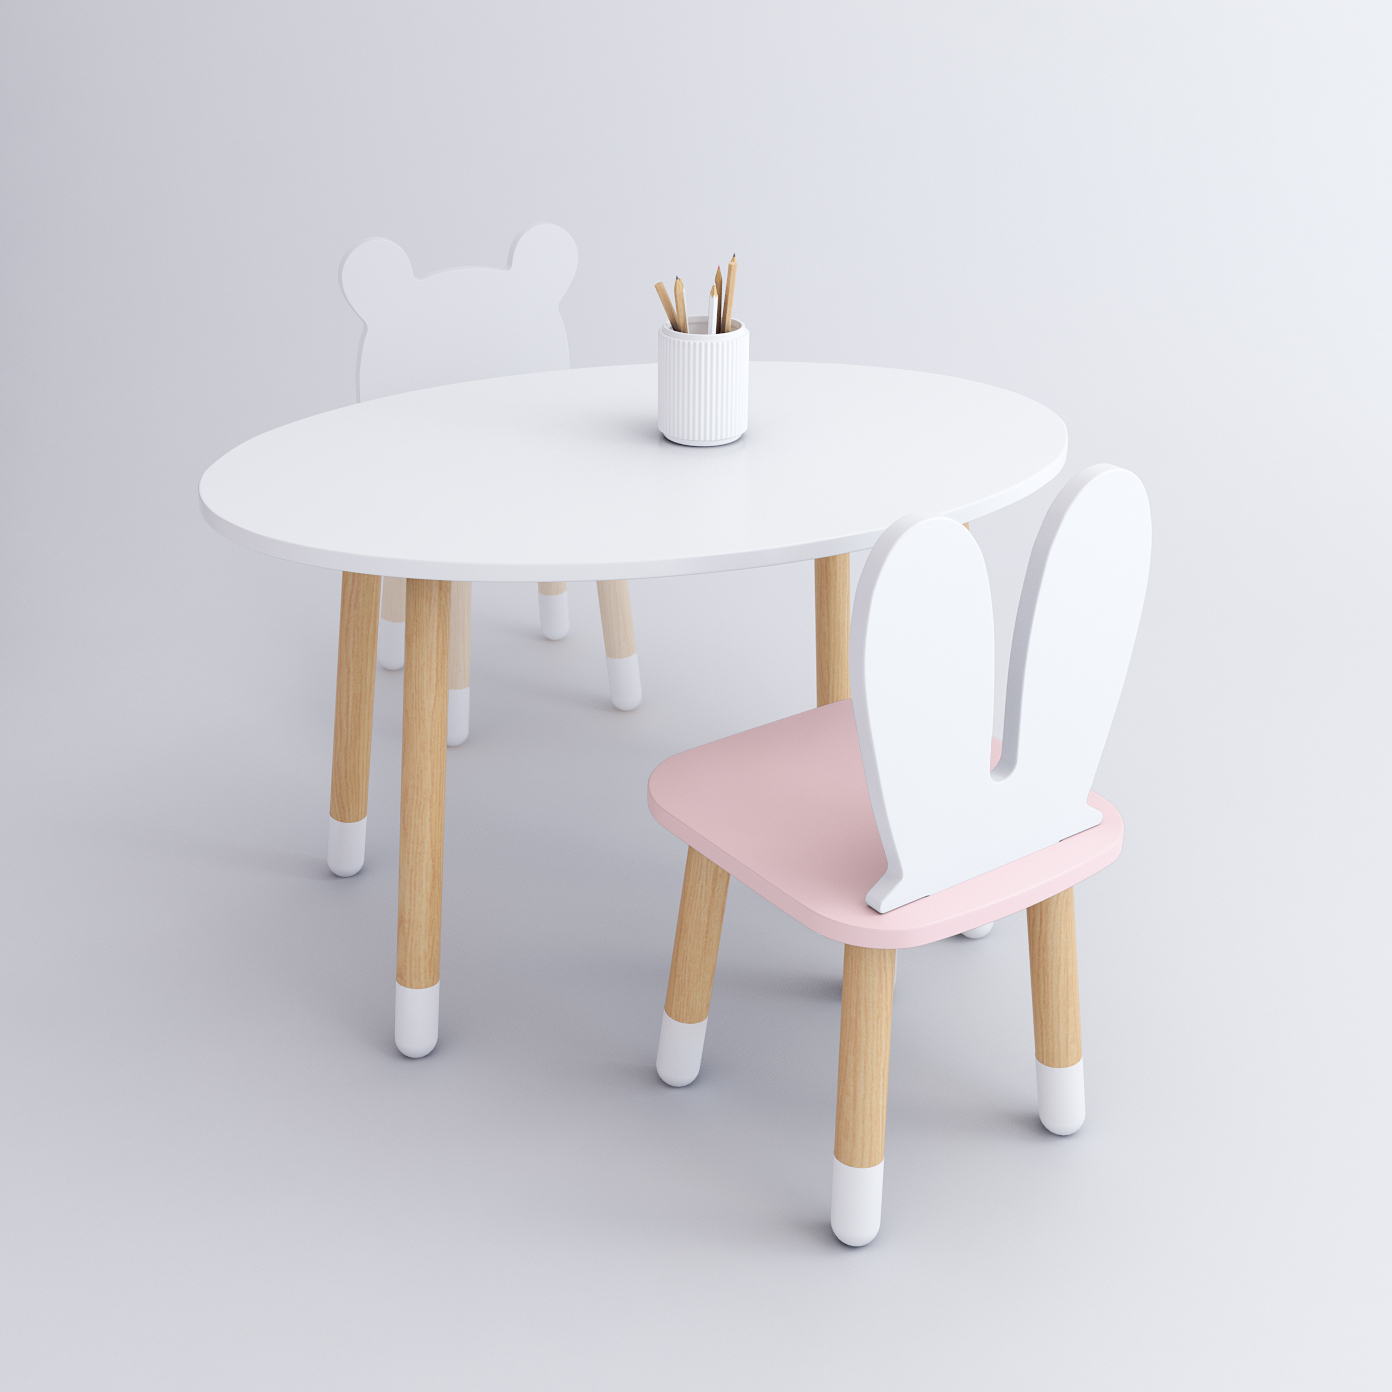 Комплект детской мебели DIMDOM kids, стол Овал белый, стул Зайка розовый комплект детской мебели rules столик облачко и стульчик зайка белая и розовая эмаль